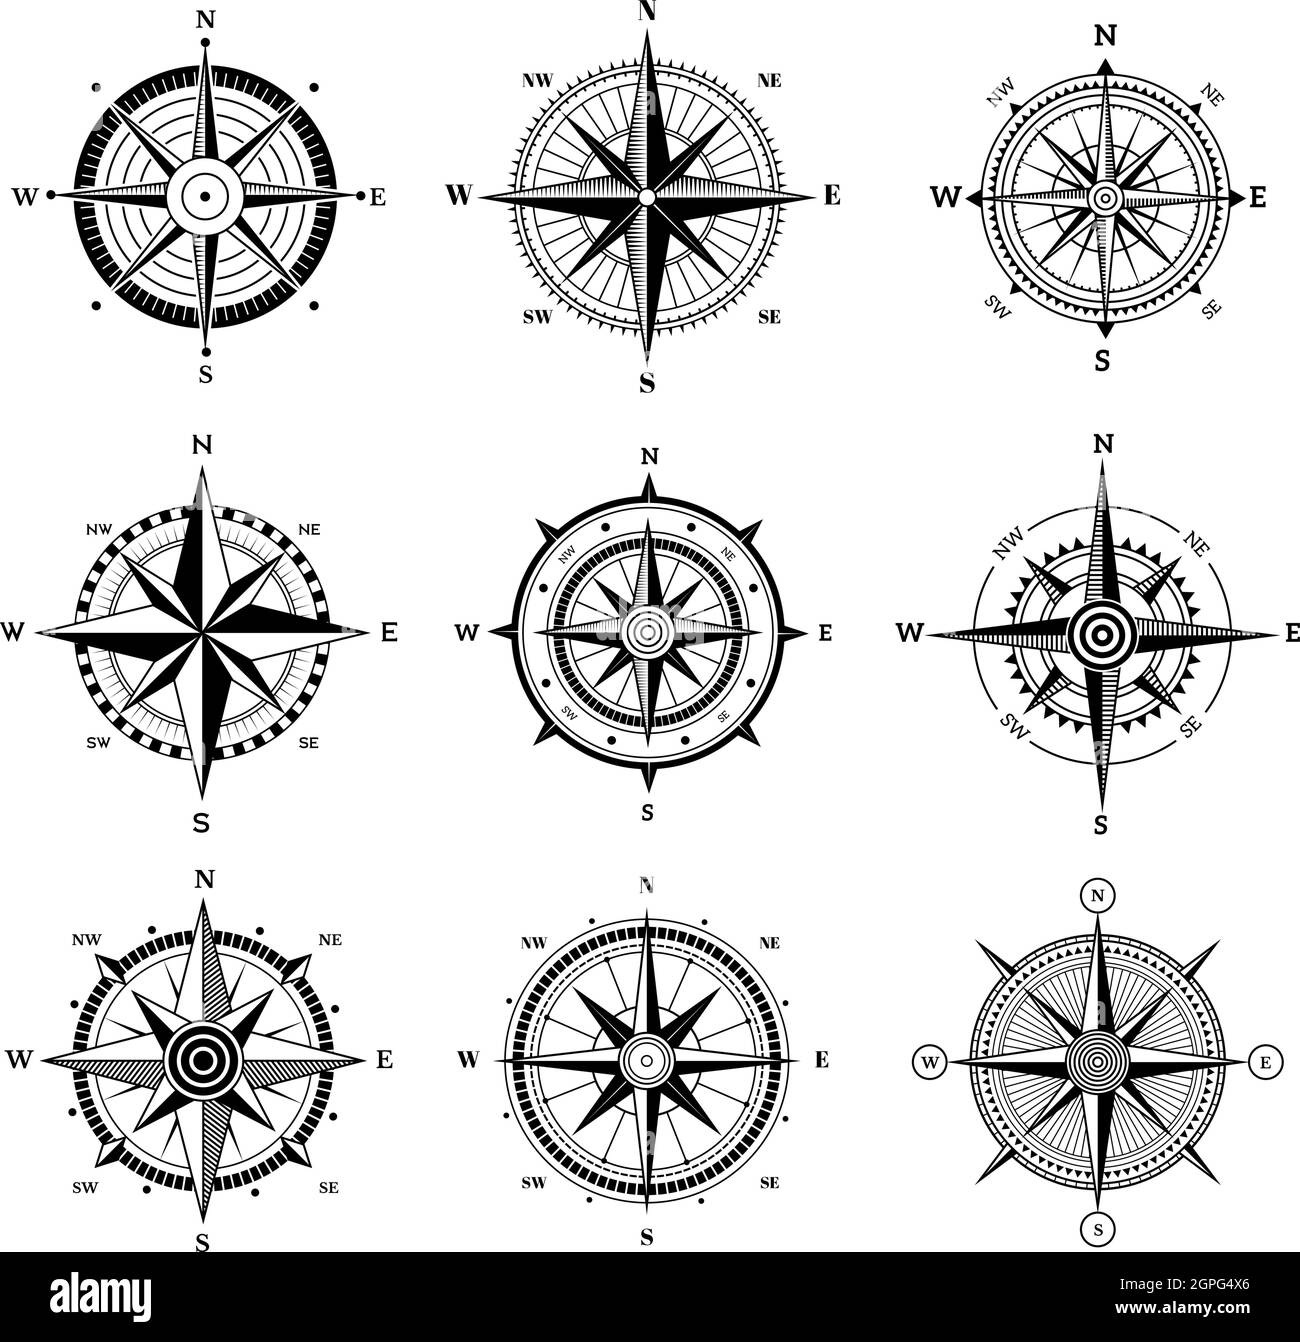 Windrose eingestellt. Reise Abenteuer Segeln nautische Rose Ziel Richtungspfeile Vektor-Navigation Symbole für alte Karte Stock Vektor